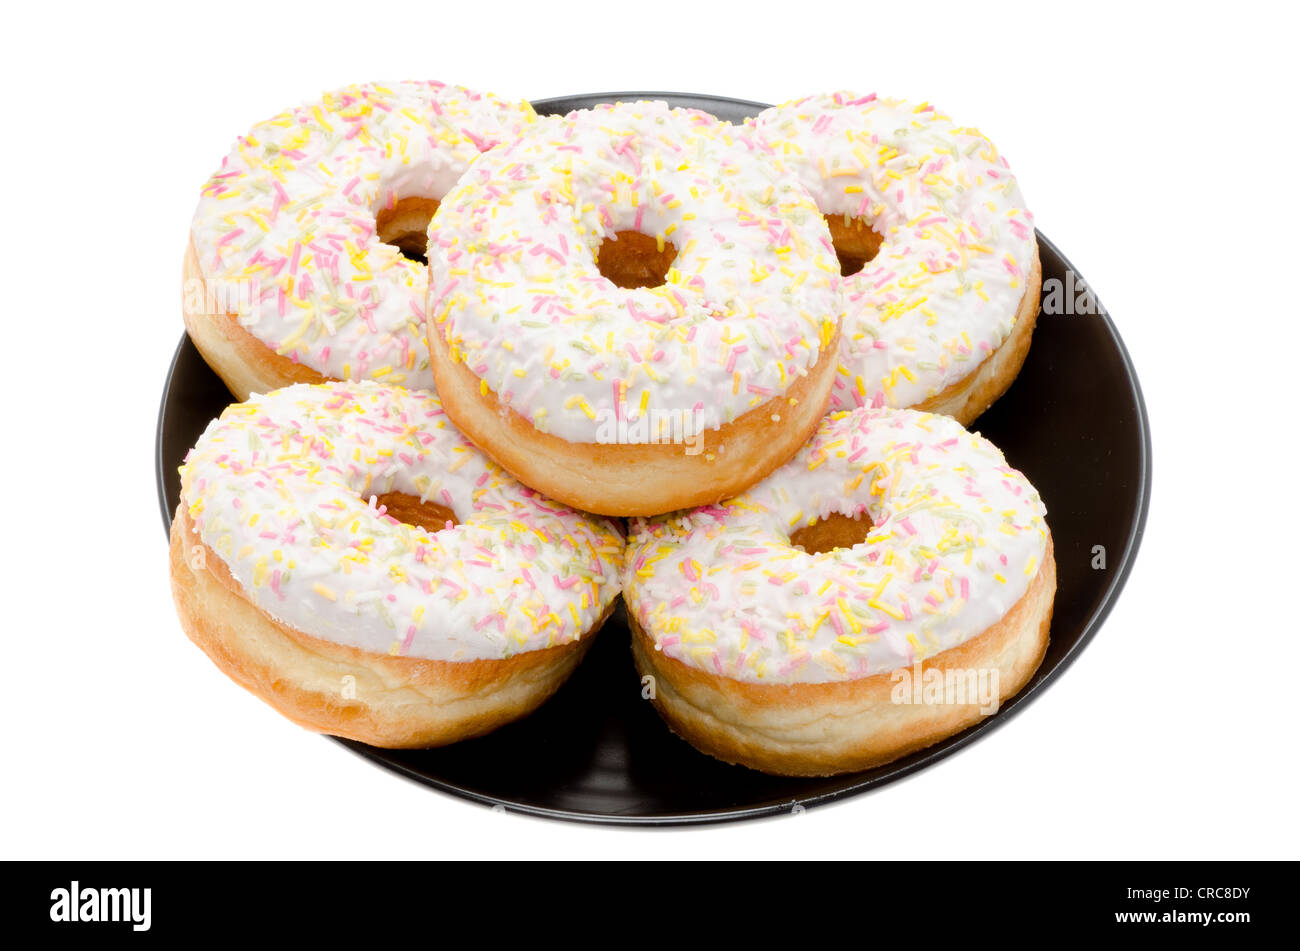 Ring donuts disposées sur une plaque noire. Studio photo avec un fond blanc. Banque D'Images